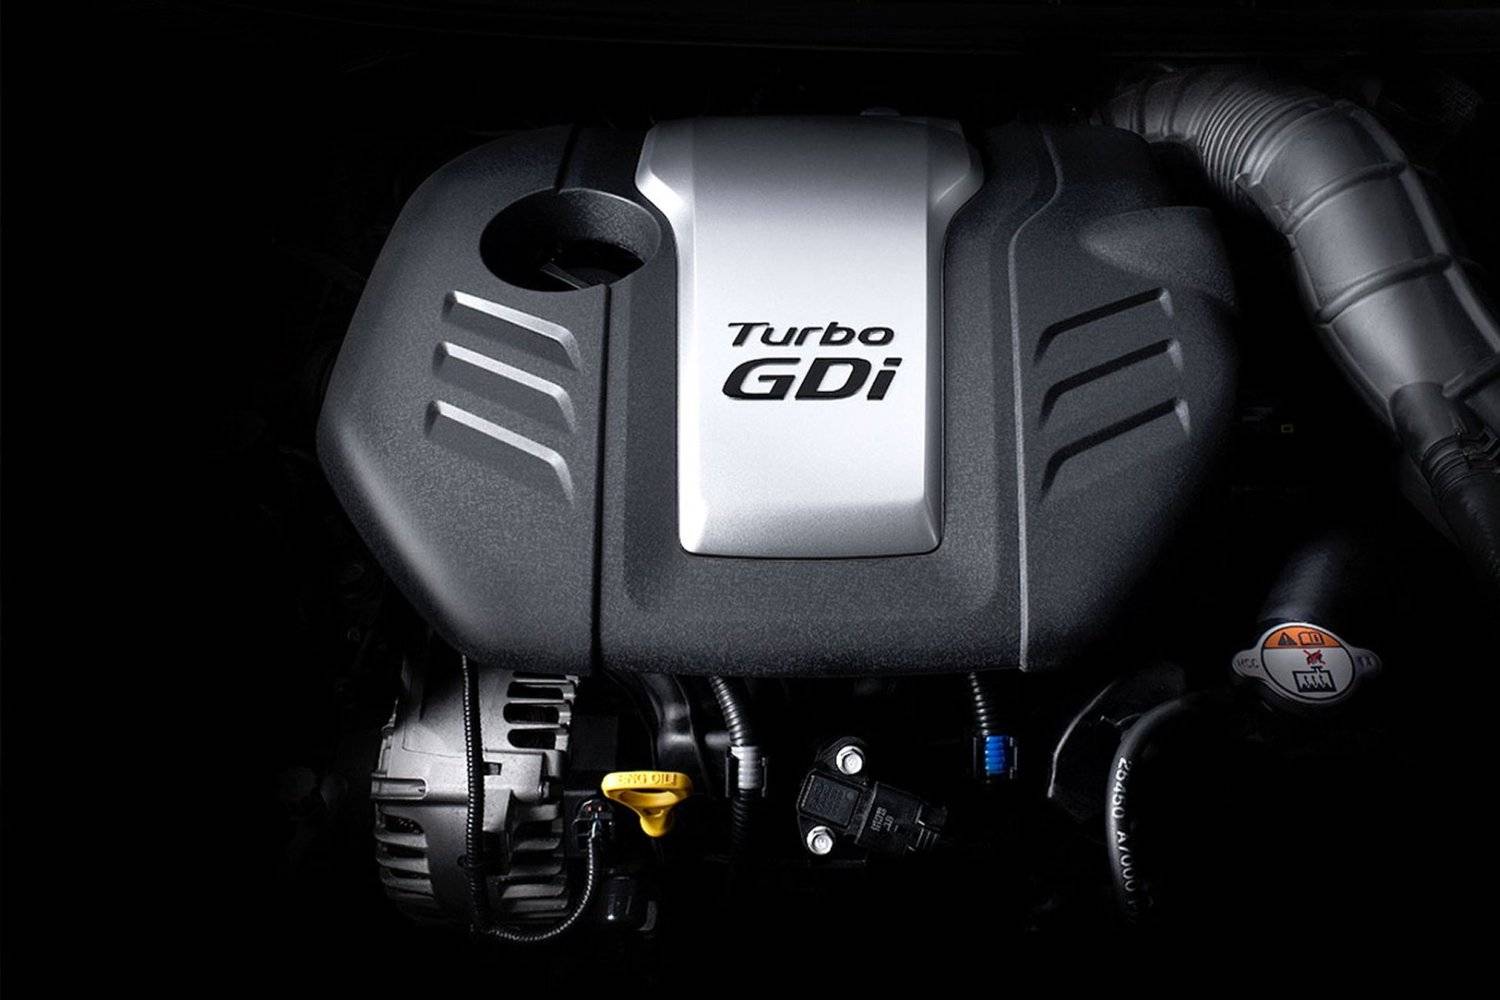 Gdi двигатели - что такое система впрыска gdi автомобиля